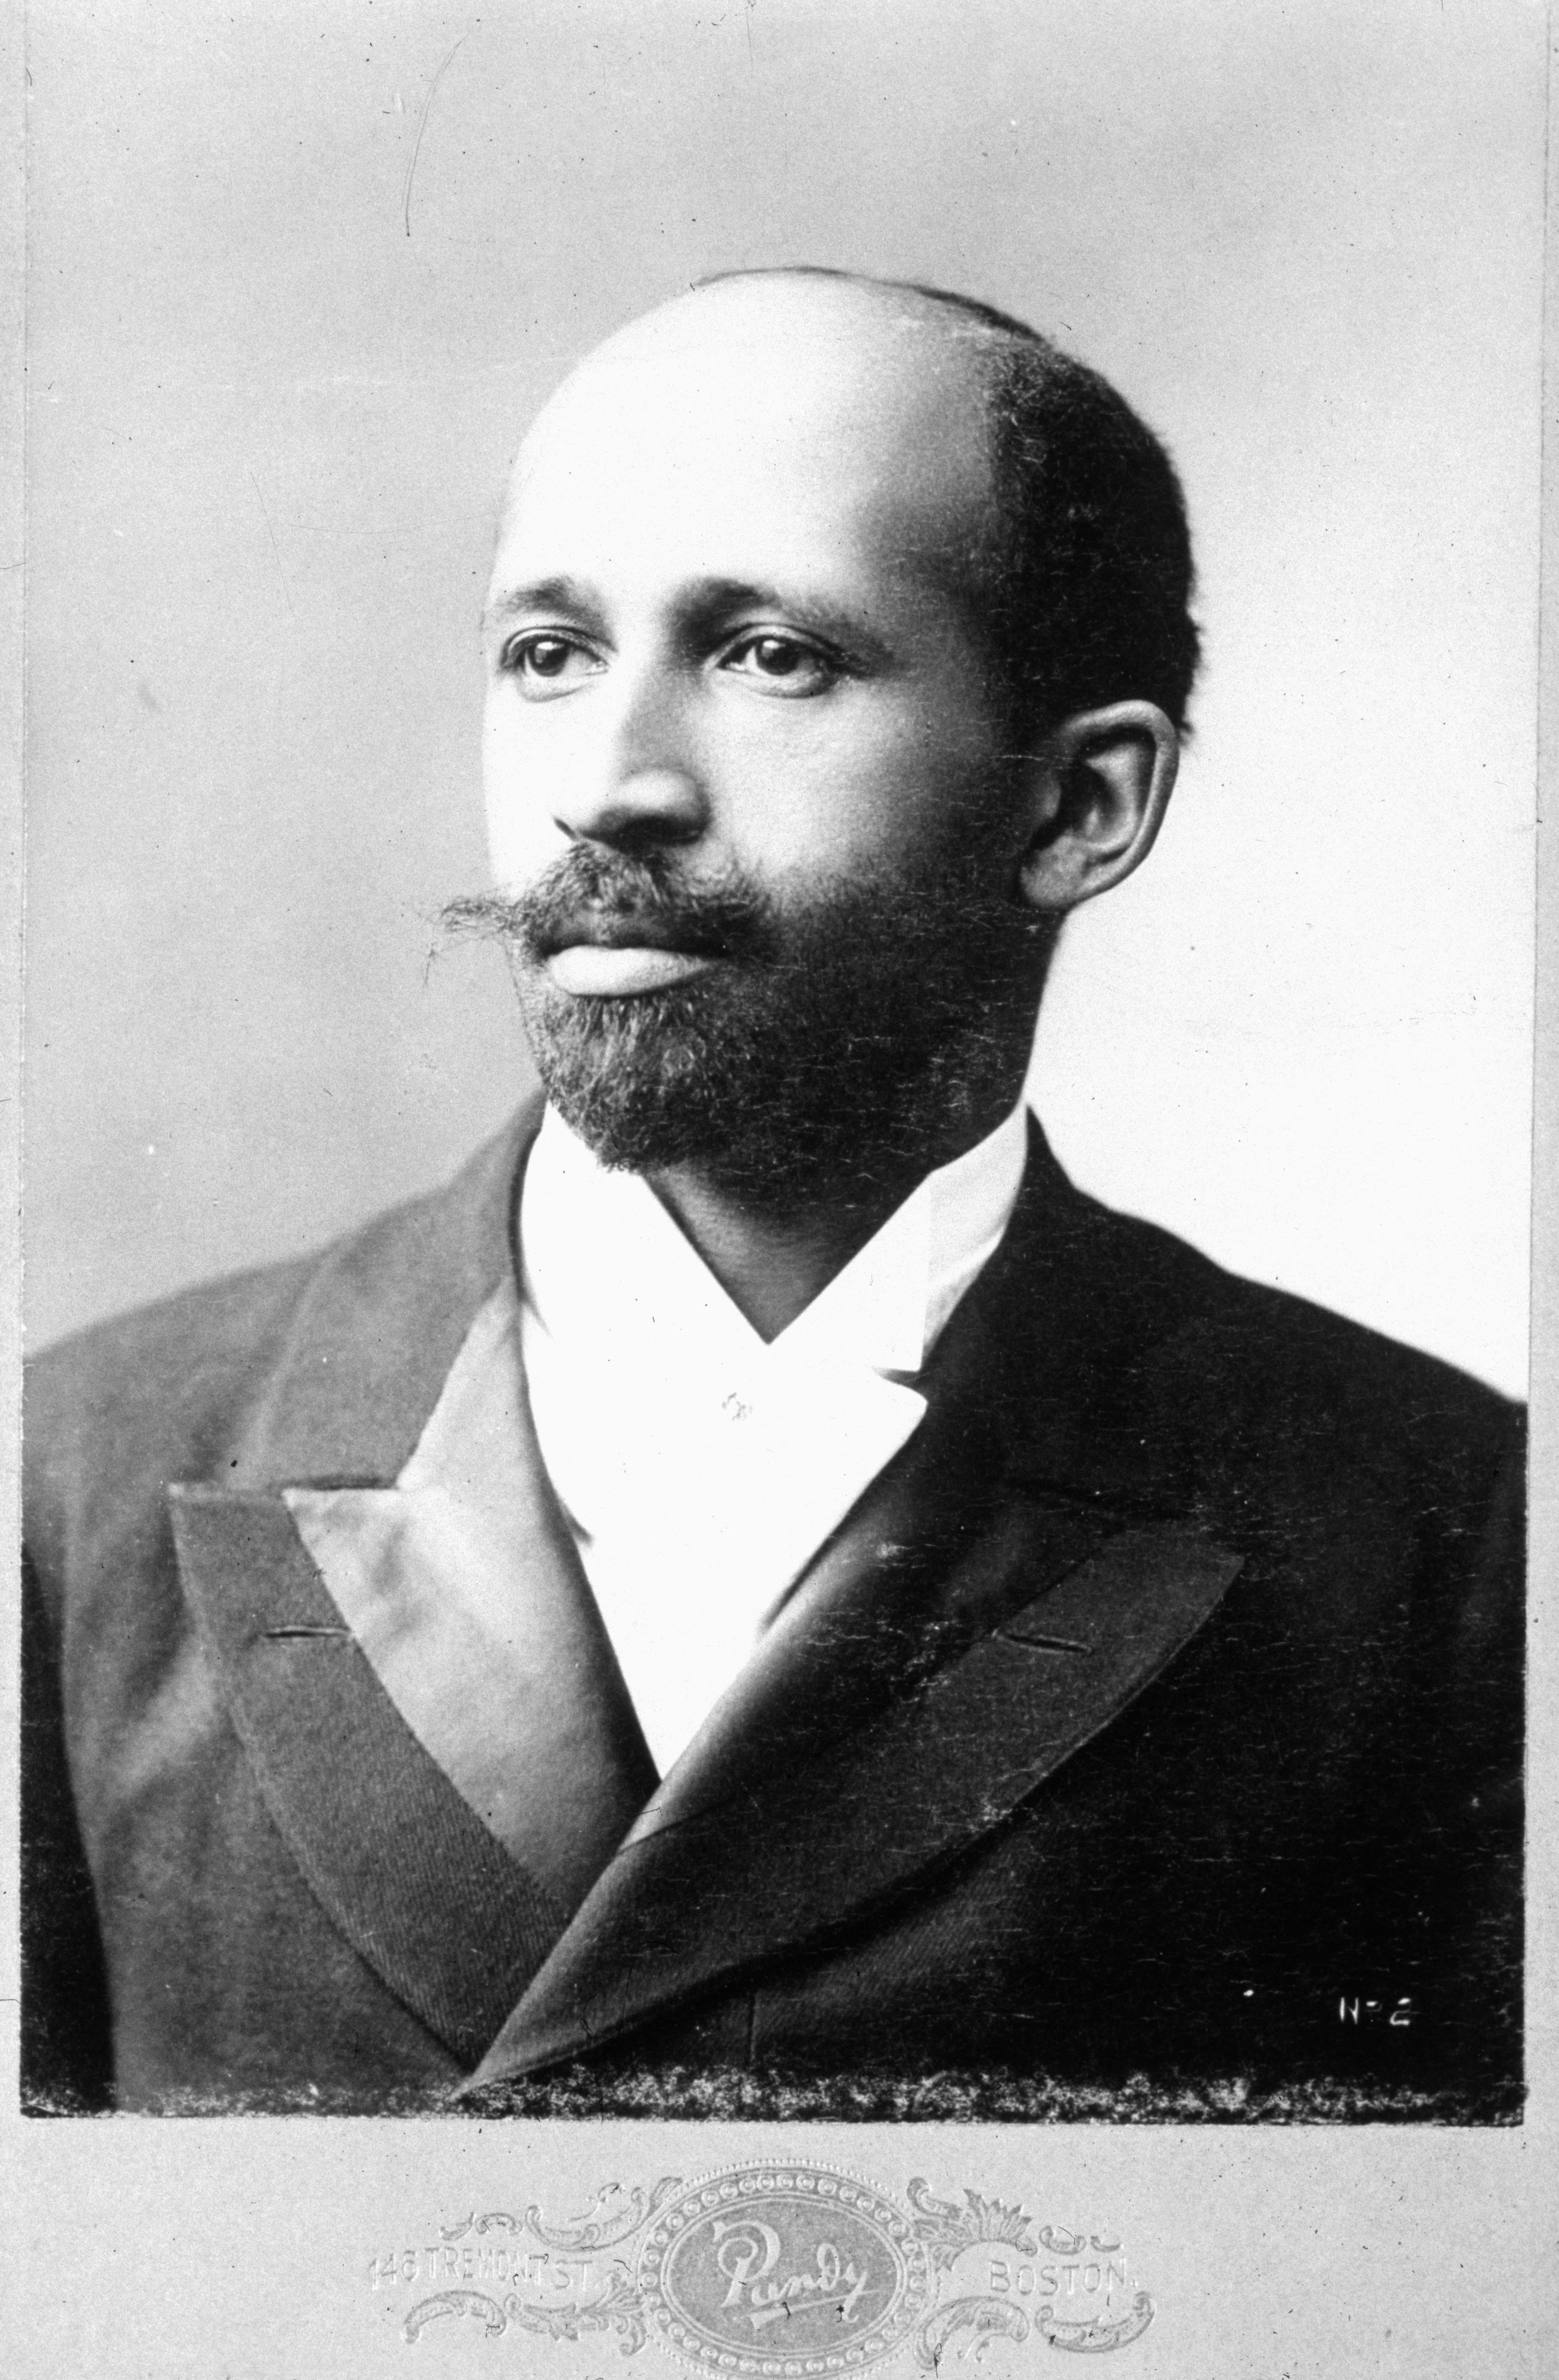 An undated portrait of W. E. B. Du Bois